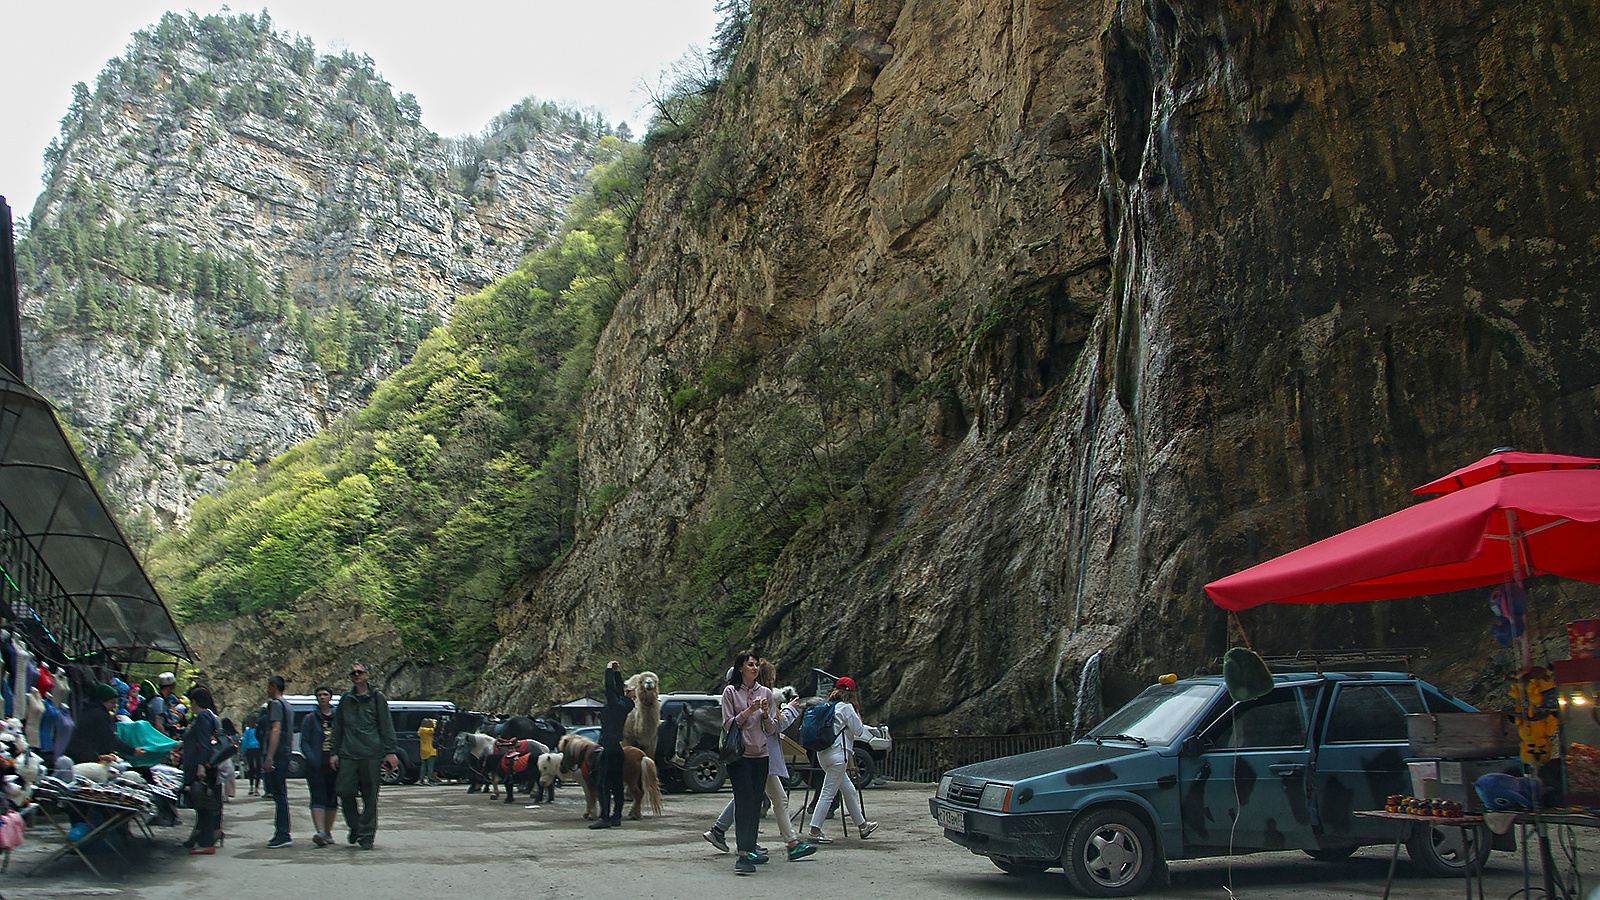 праздность и повседневность у чегемских водопадов Чегемское ущелье водопады праздность туристы повседневность торговцы